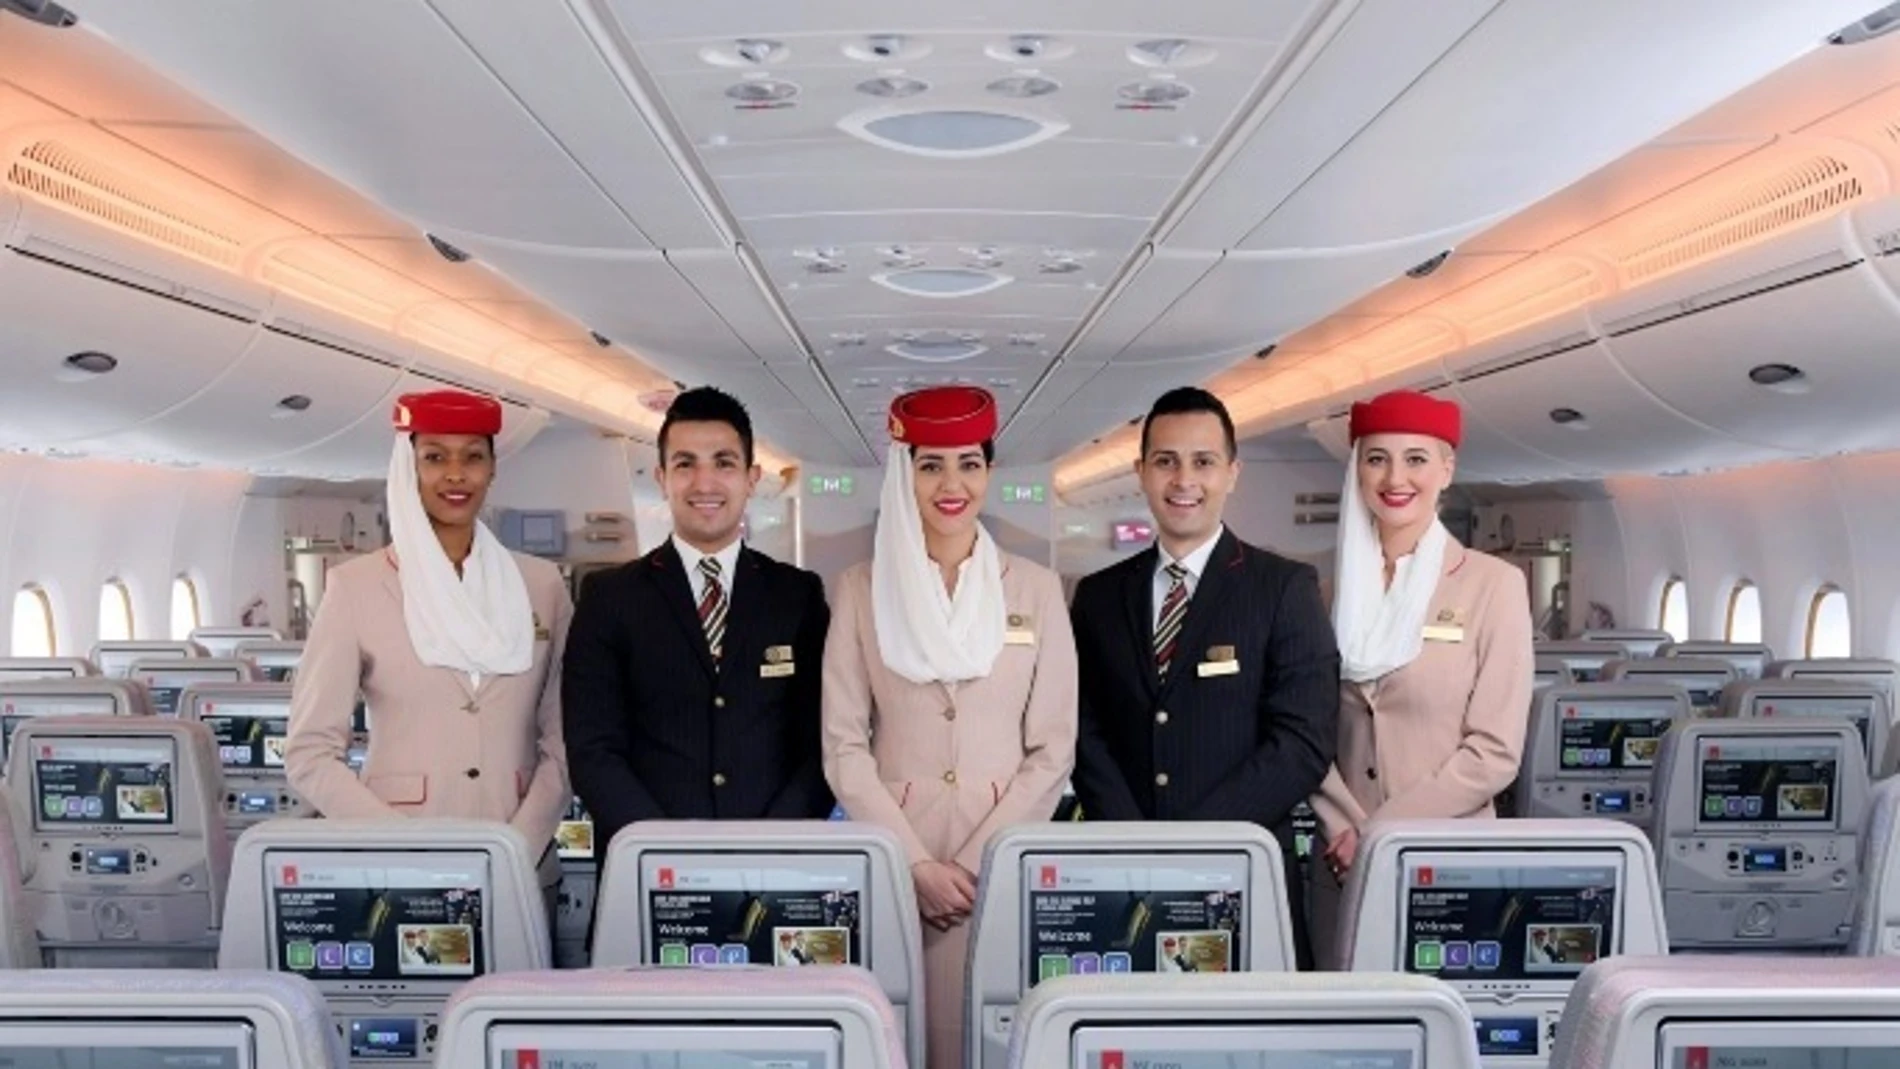 Emirates reclutará en enero tripulantes de cabina de siete ciudades españolas, entre ellas Madrid, Barcelona o Málaga.EMIRATES